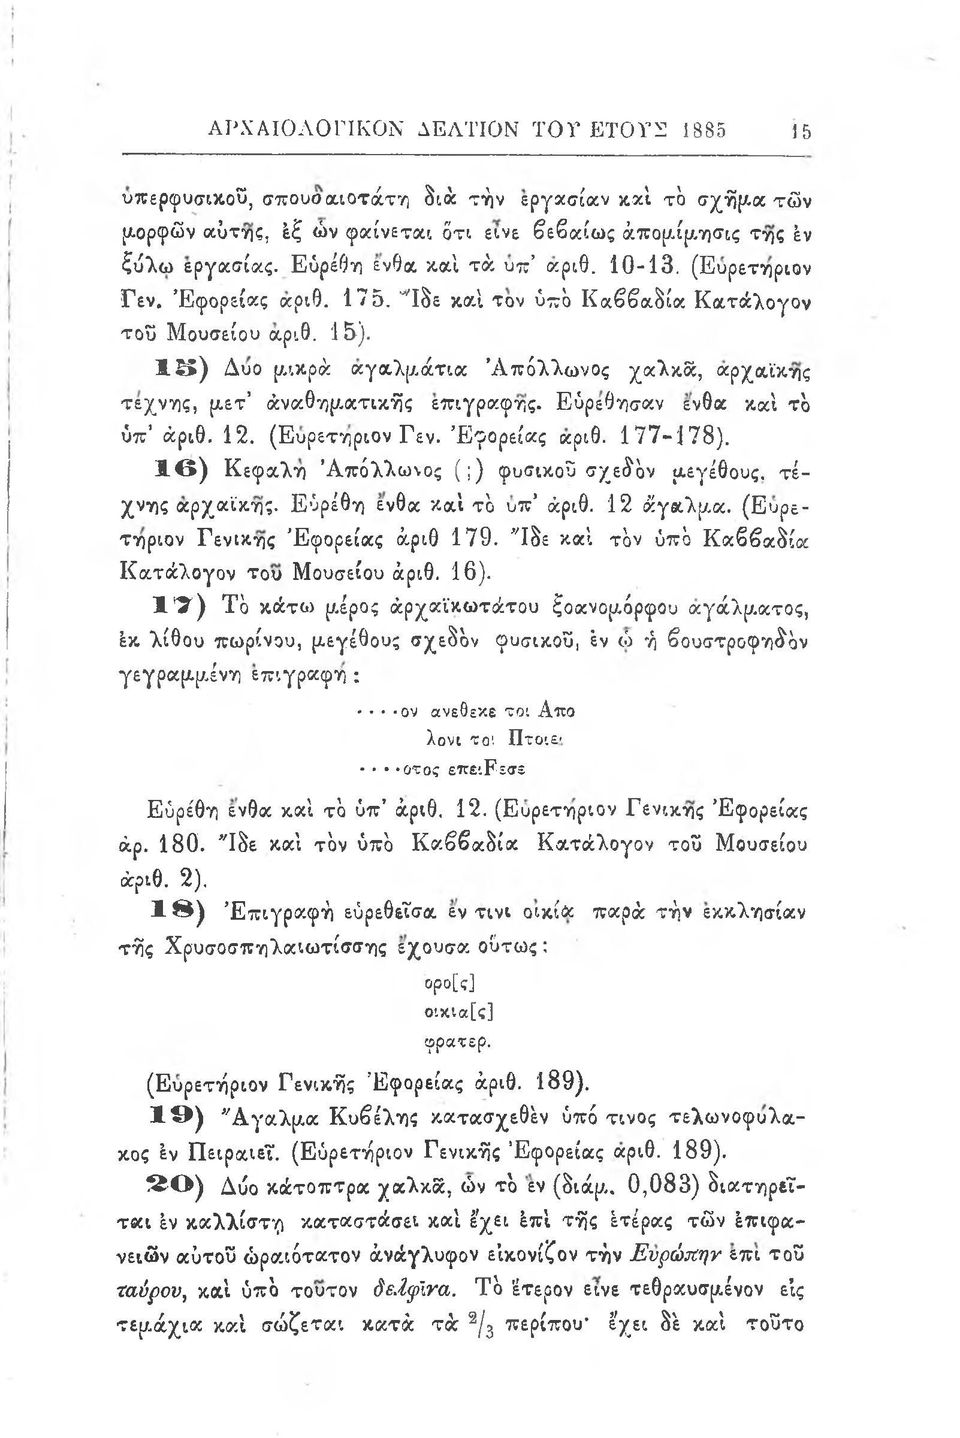 1 5 ) Δύο μικρά αγαλμάτια Απόλλωνος χαλκά, αρχαϊκής τέχνης, μετ αναθηματικής επιγραφής. Ευρέθησαν ένθα και τ ο υπ α ριθ. 12. (Ευρετήριον Γεν. Εφορείας αριθ. 177-178).